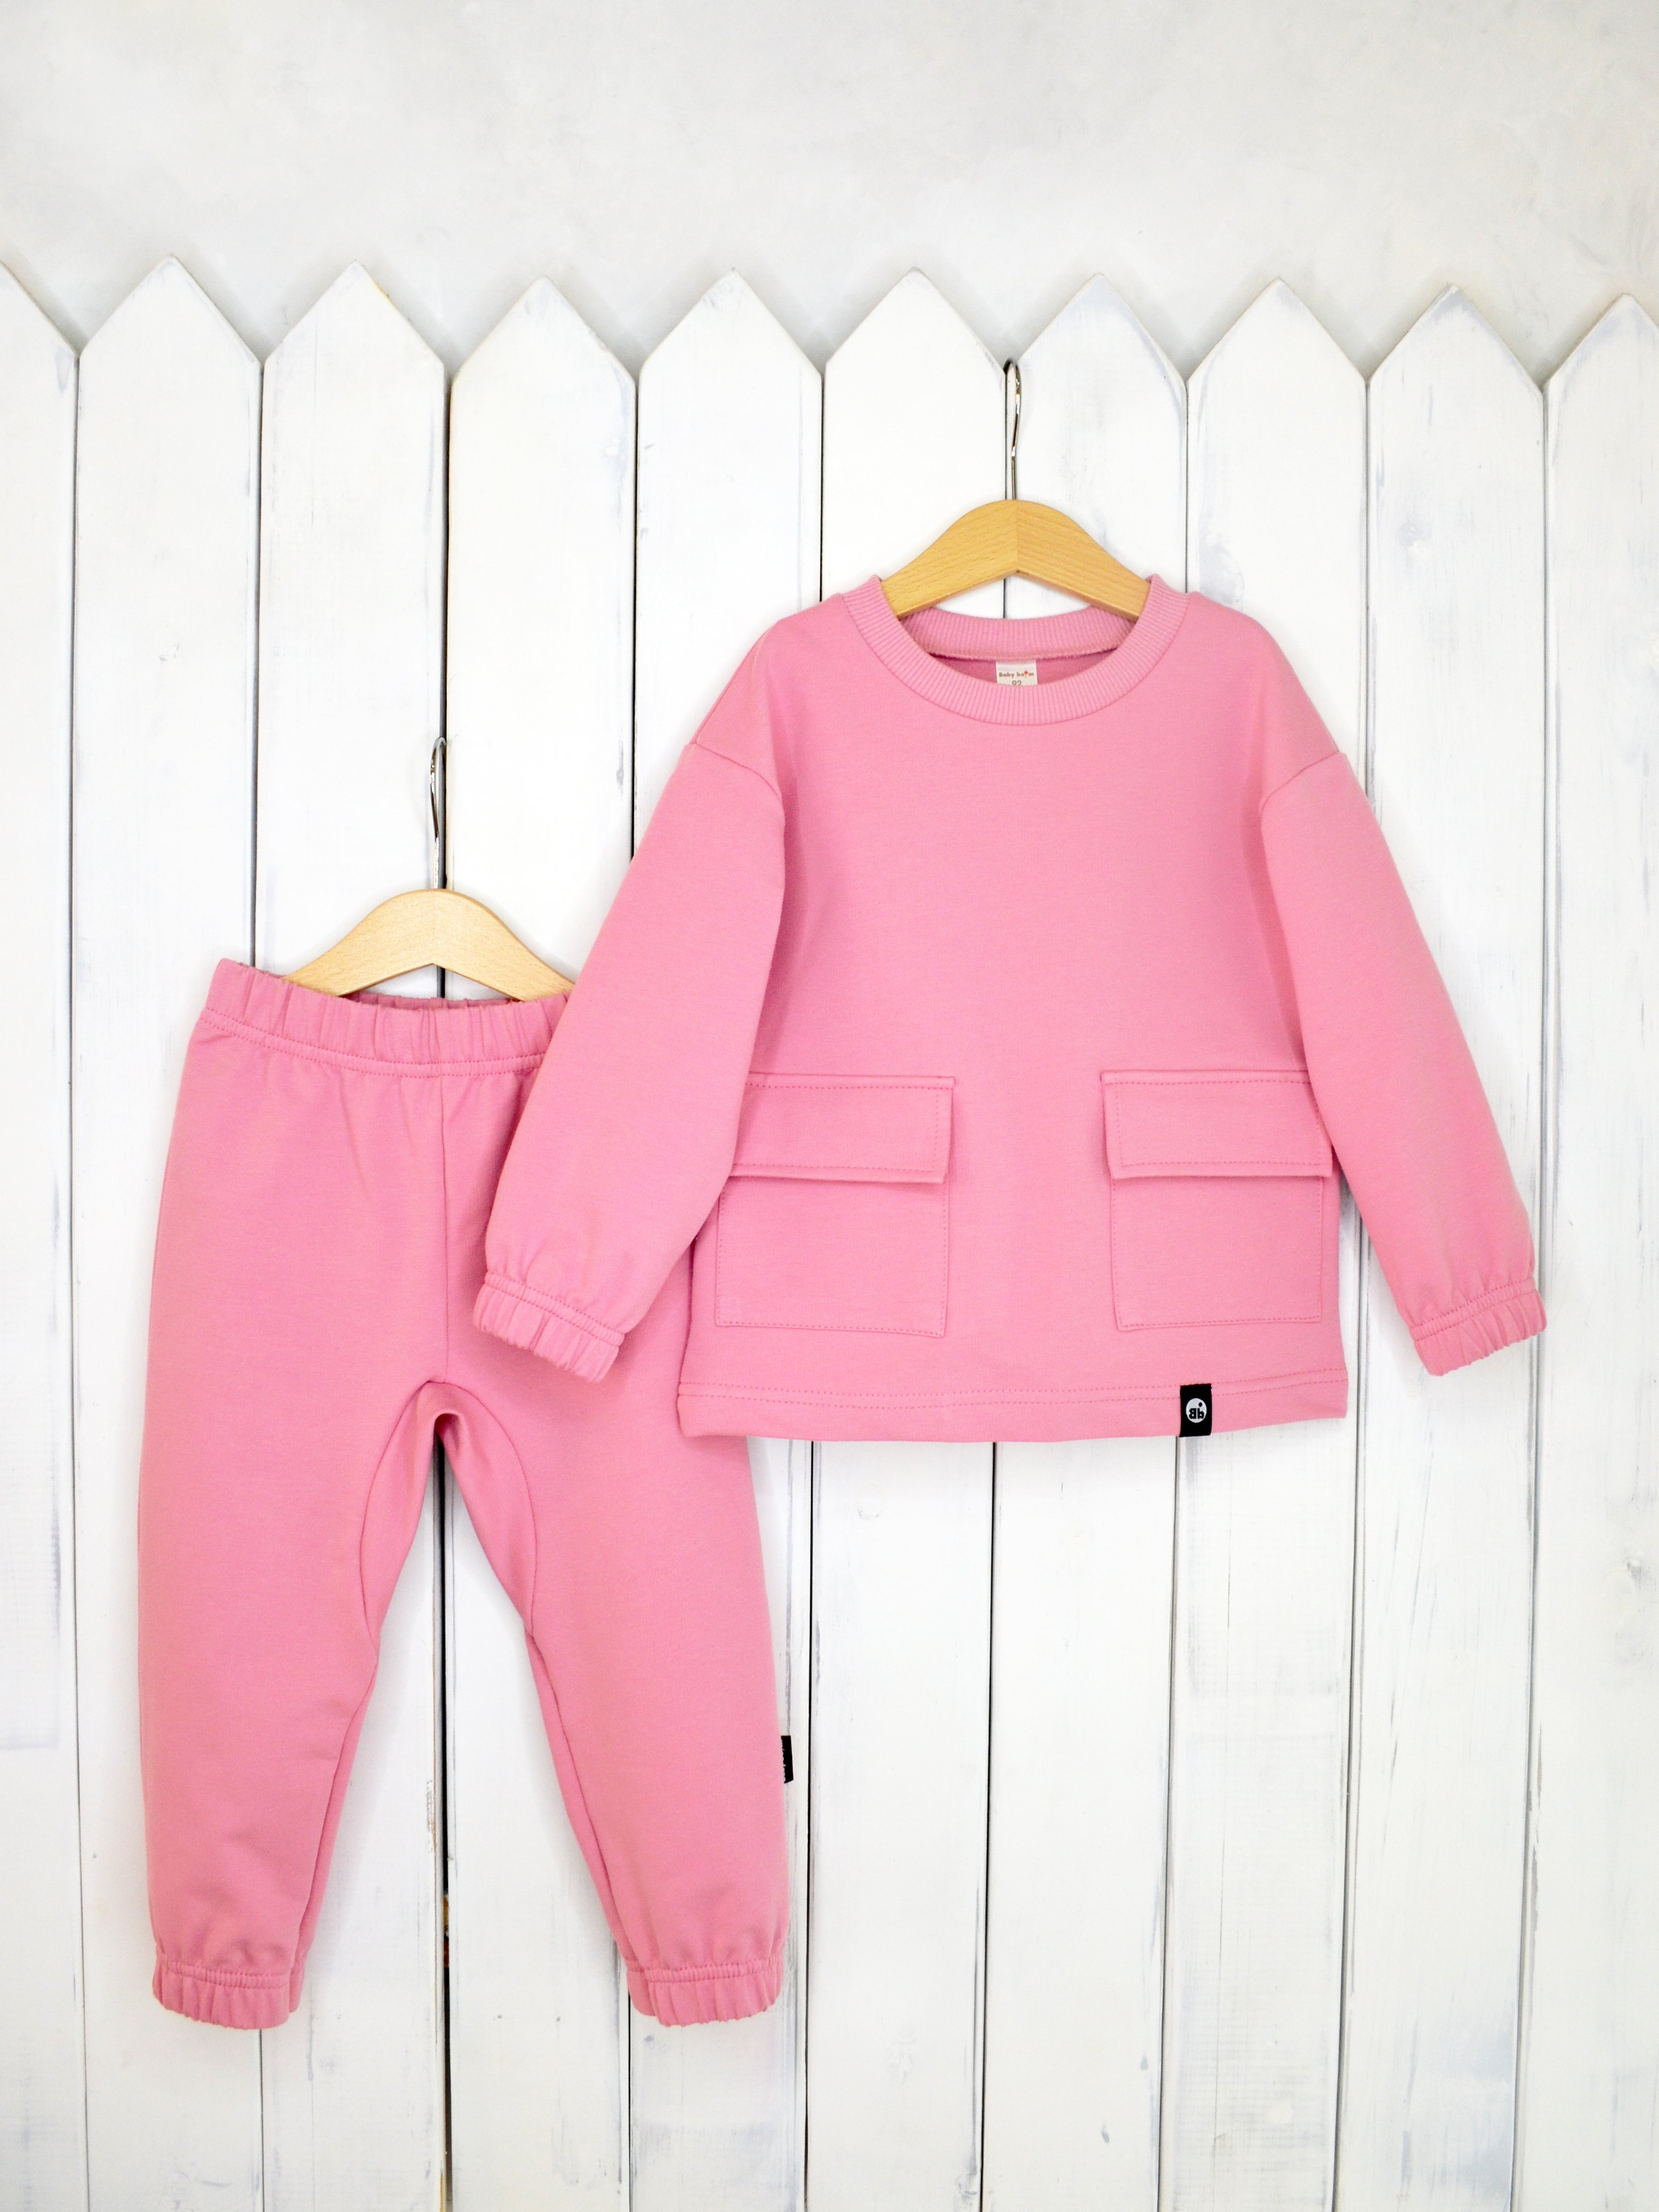 КД326/3-Ф Комплект детский джемпер+брюки цвет: розовый зефир р.98 Бэби Бум - Орск 